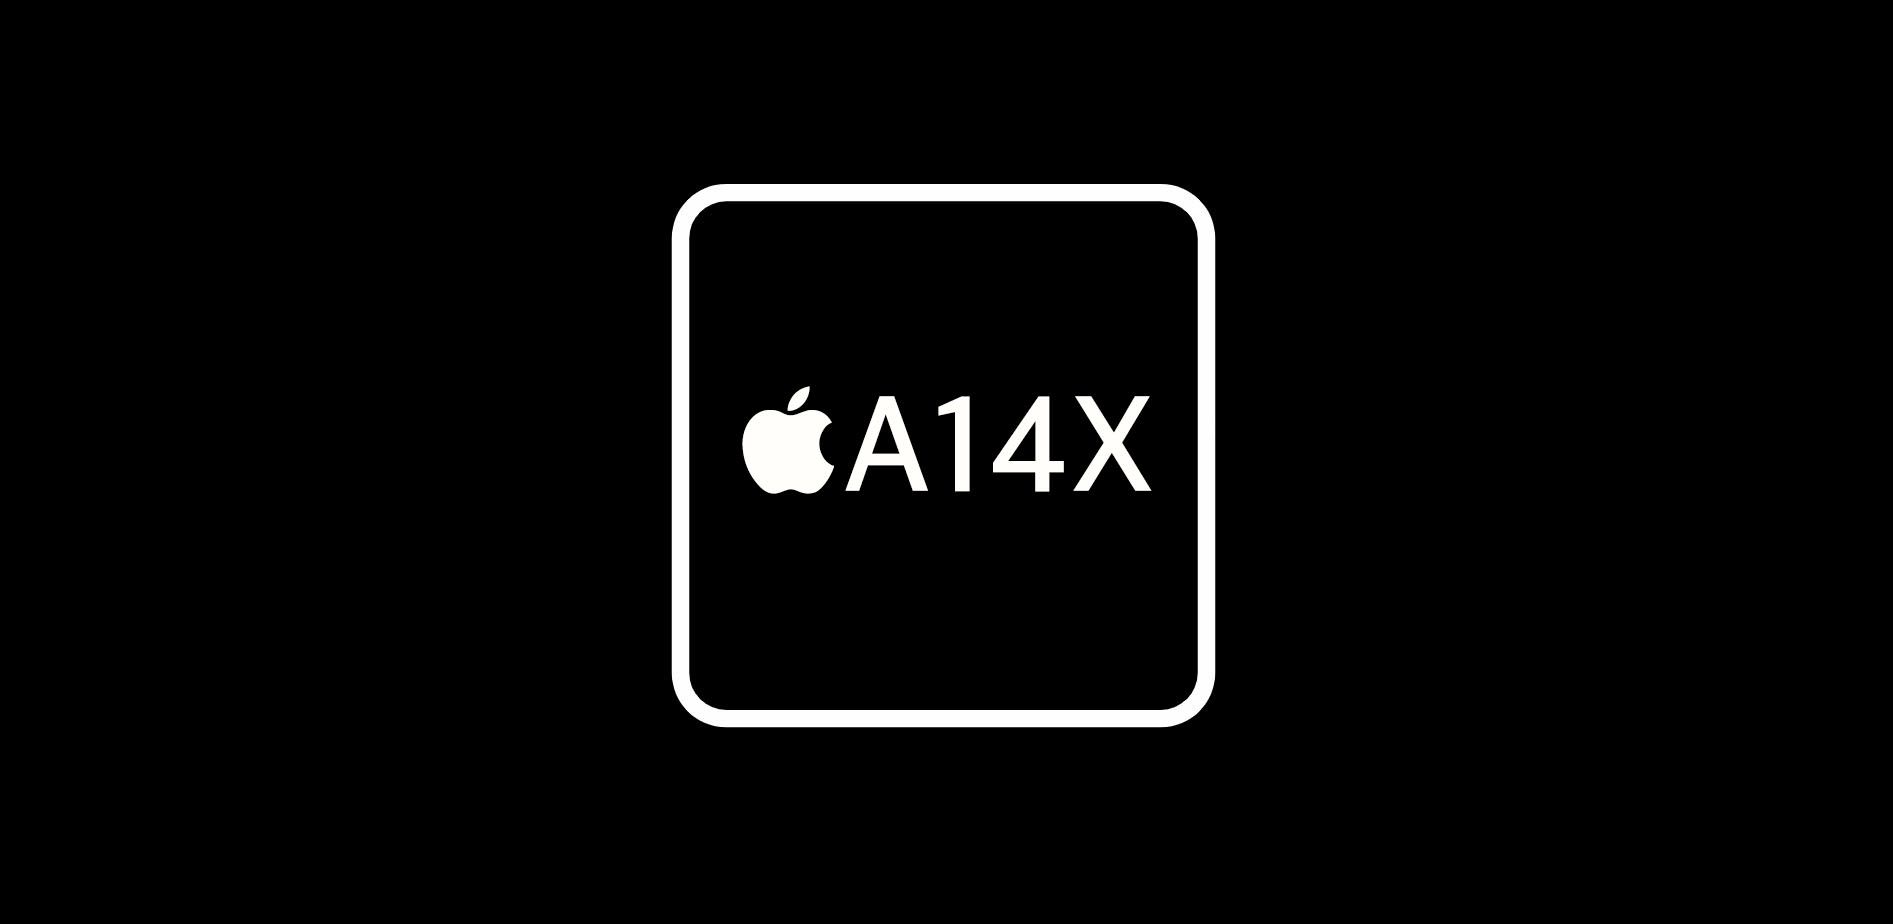 الأخبار 6 نوفمبر 2020 نتائج GeekBench المحتملة من Apple تسرب معالج السيليكون A14X